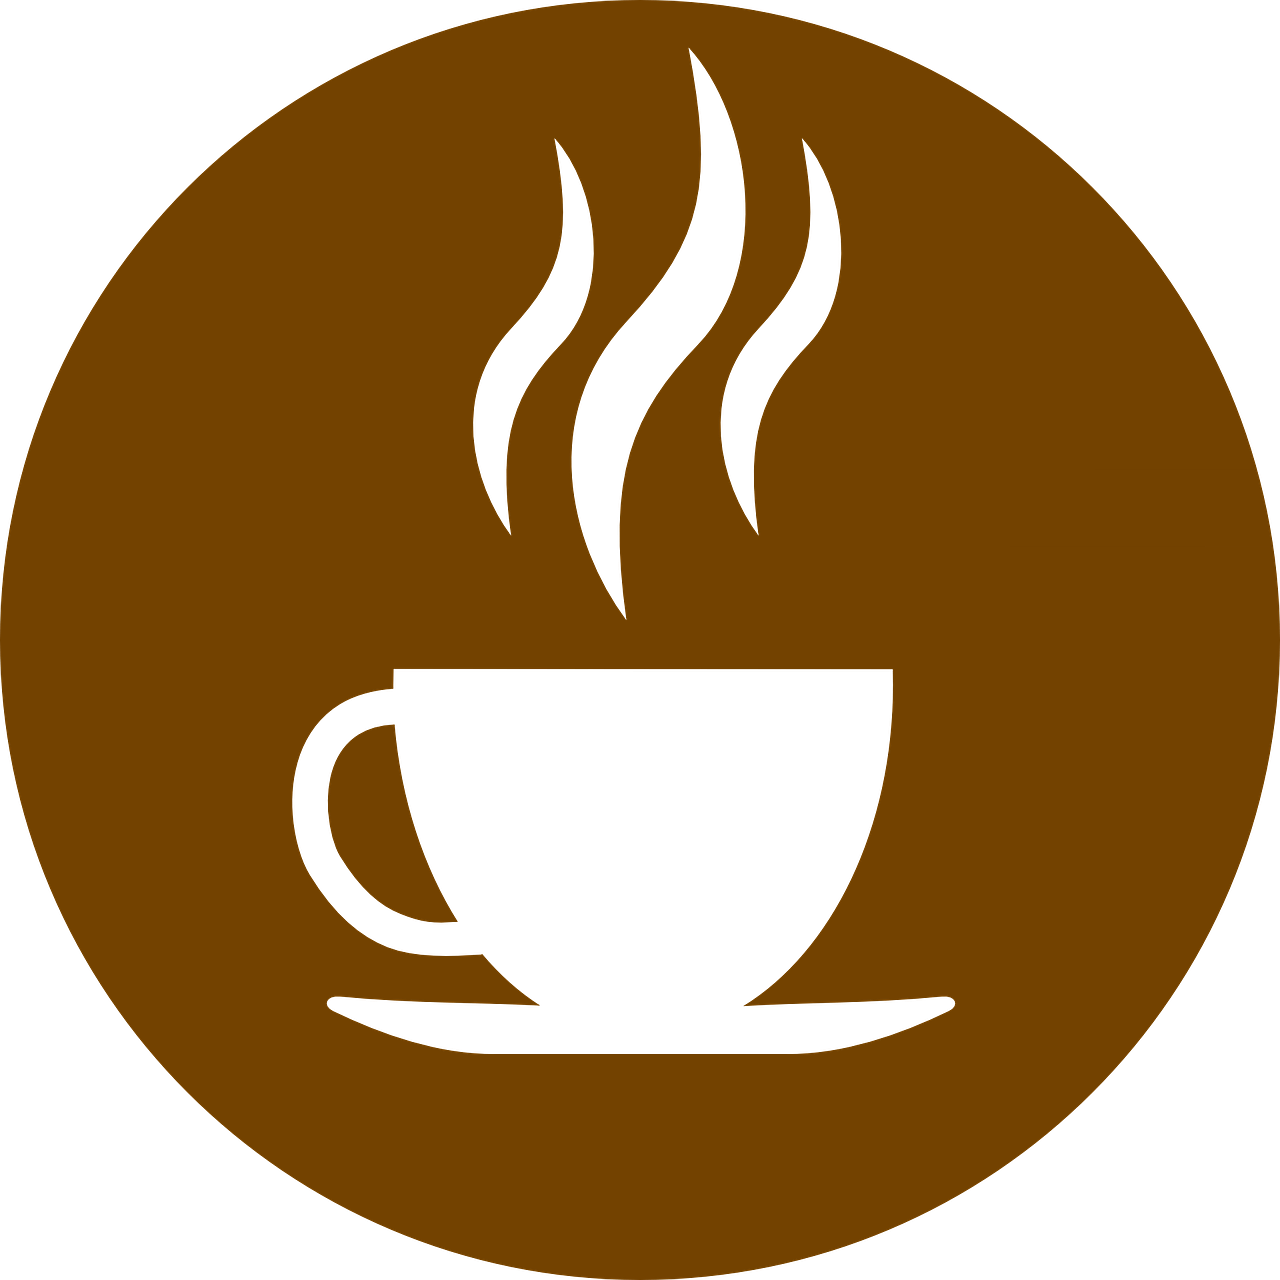 coffeebreak que realiza la neuropsicologa clinica mercedes ruiz sevilla 2019